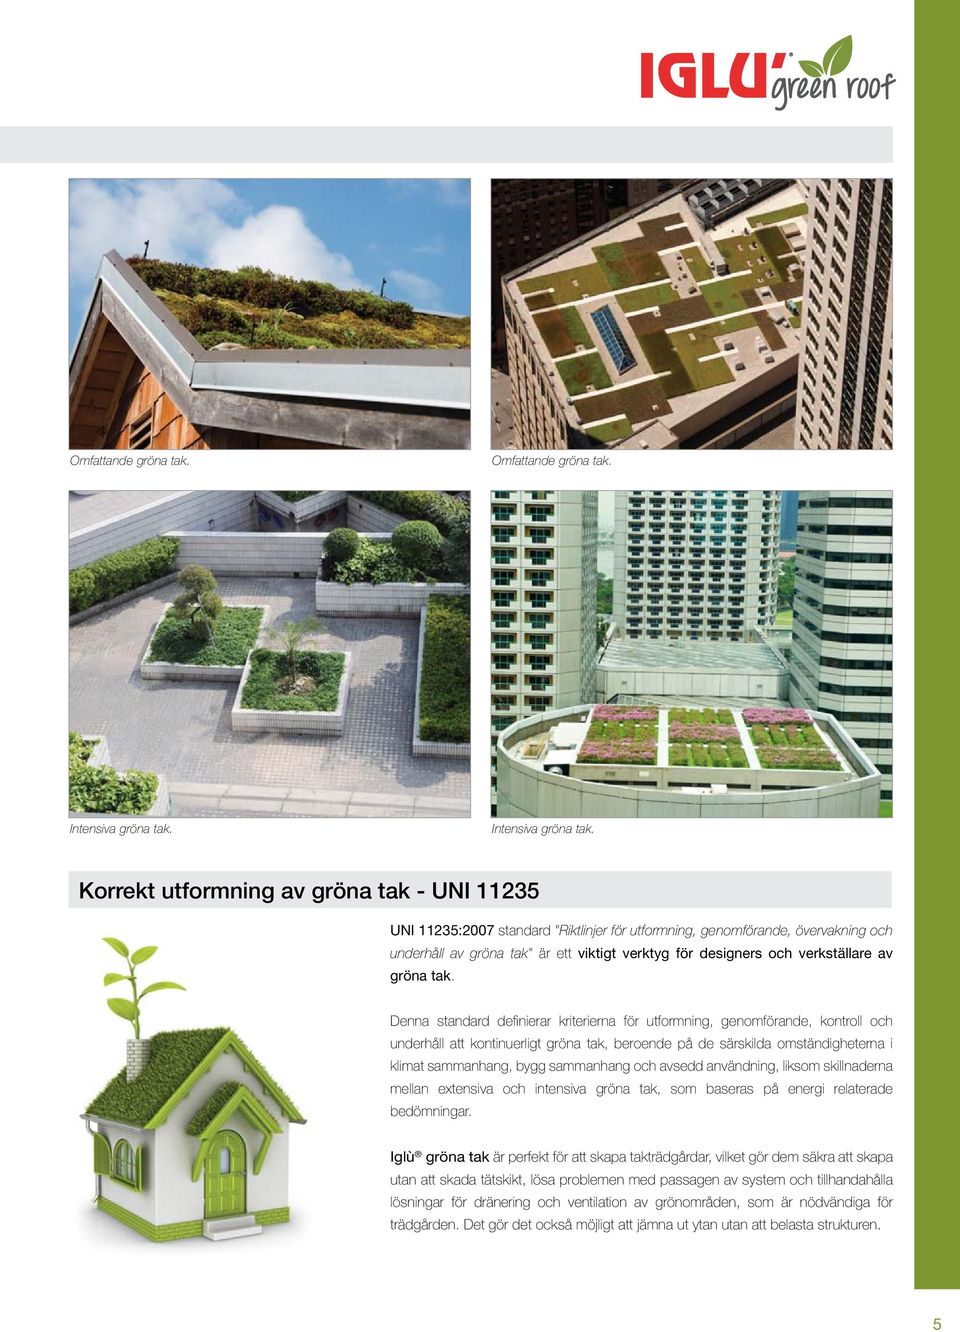 Korrekt utformning av gröna tak - UNI 11235 UNI 11235:2007 standard "Riktlinjer för utformning, genomförande, övervakning och underhåll av gröna tak" är ett viktigt verktyg för designers och